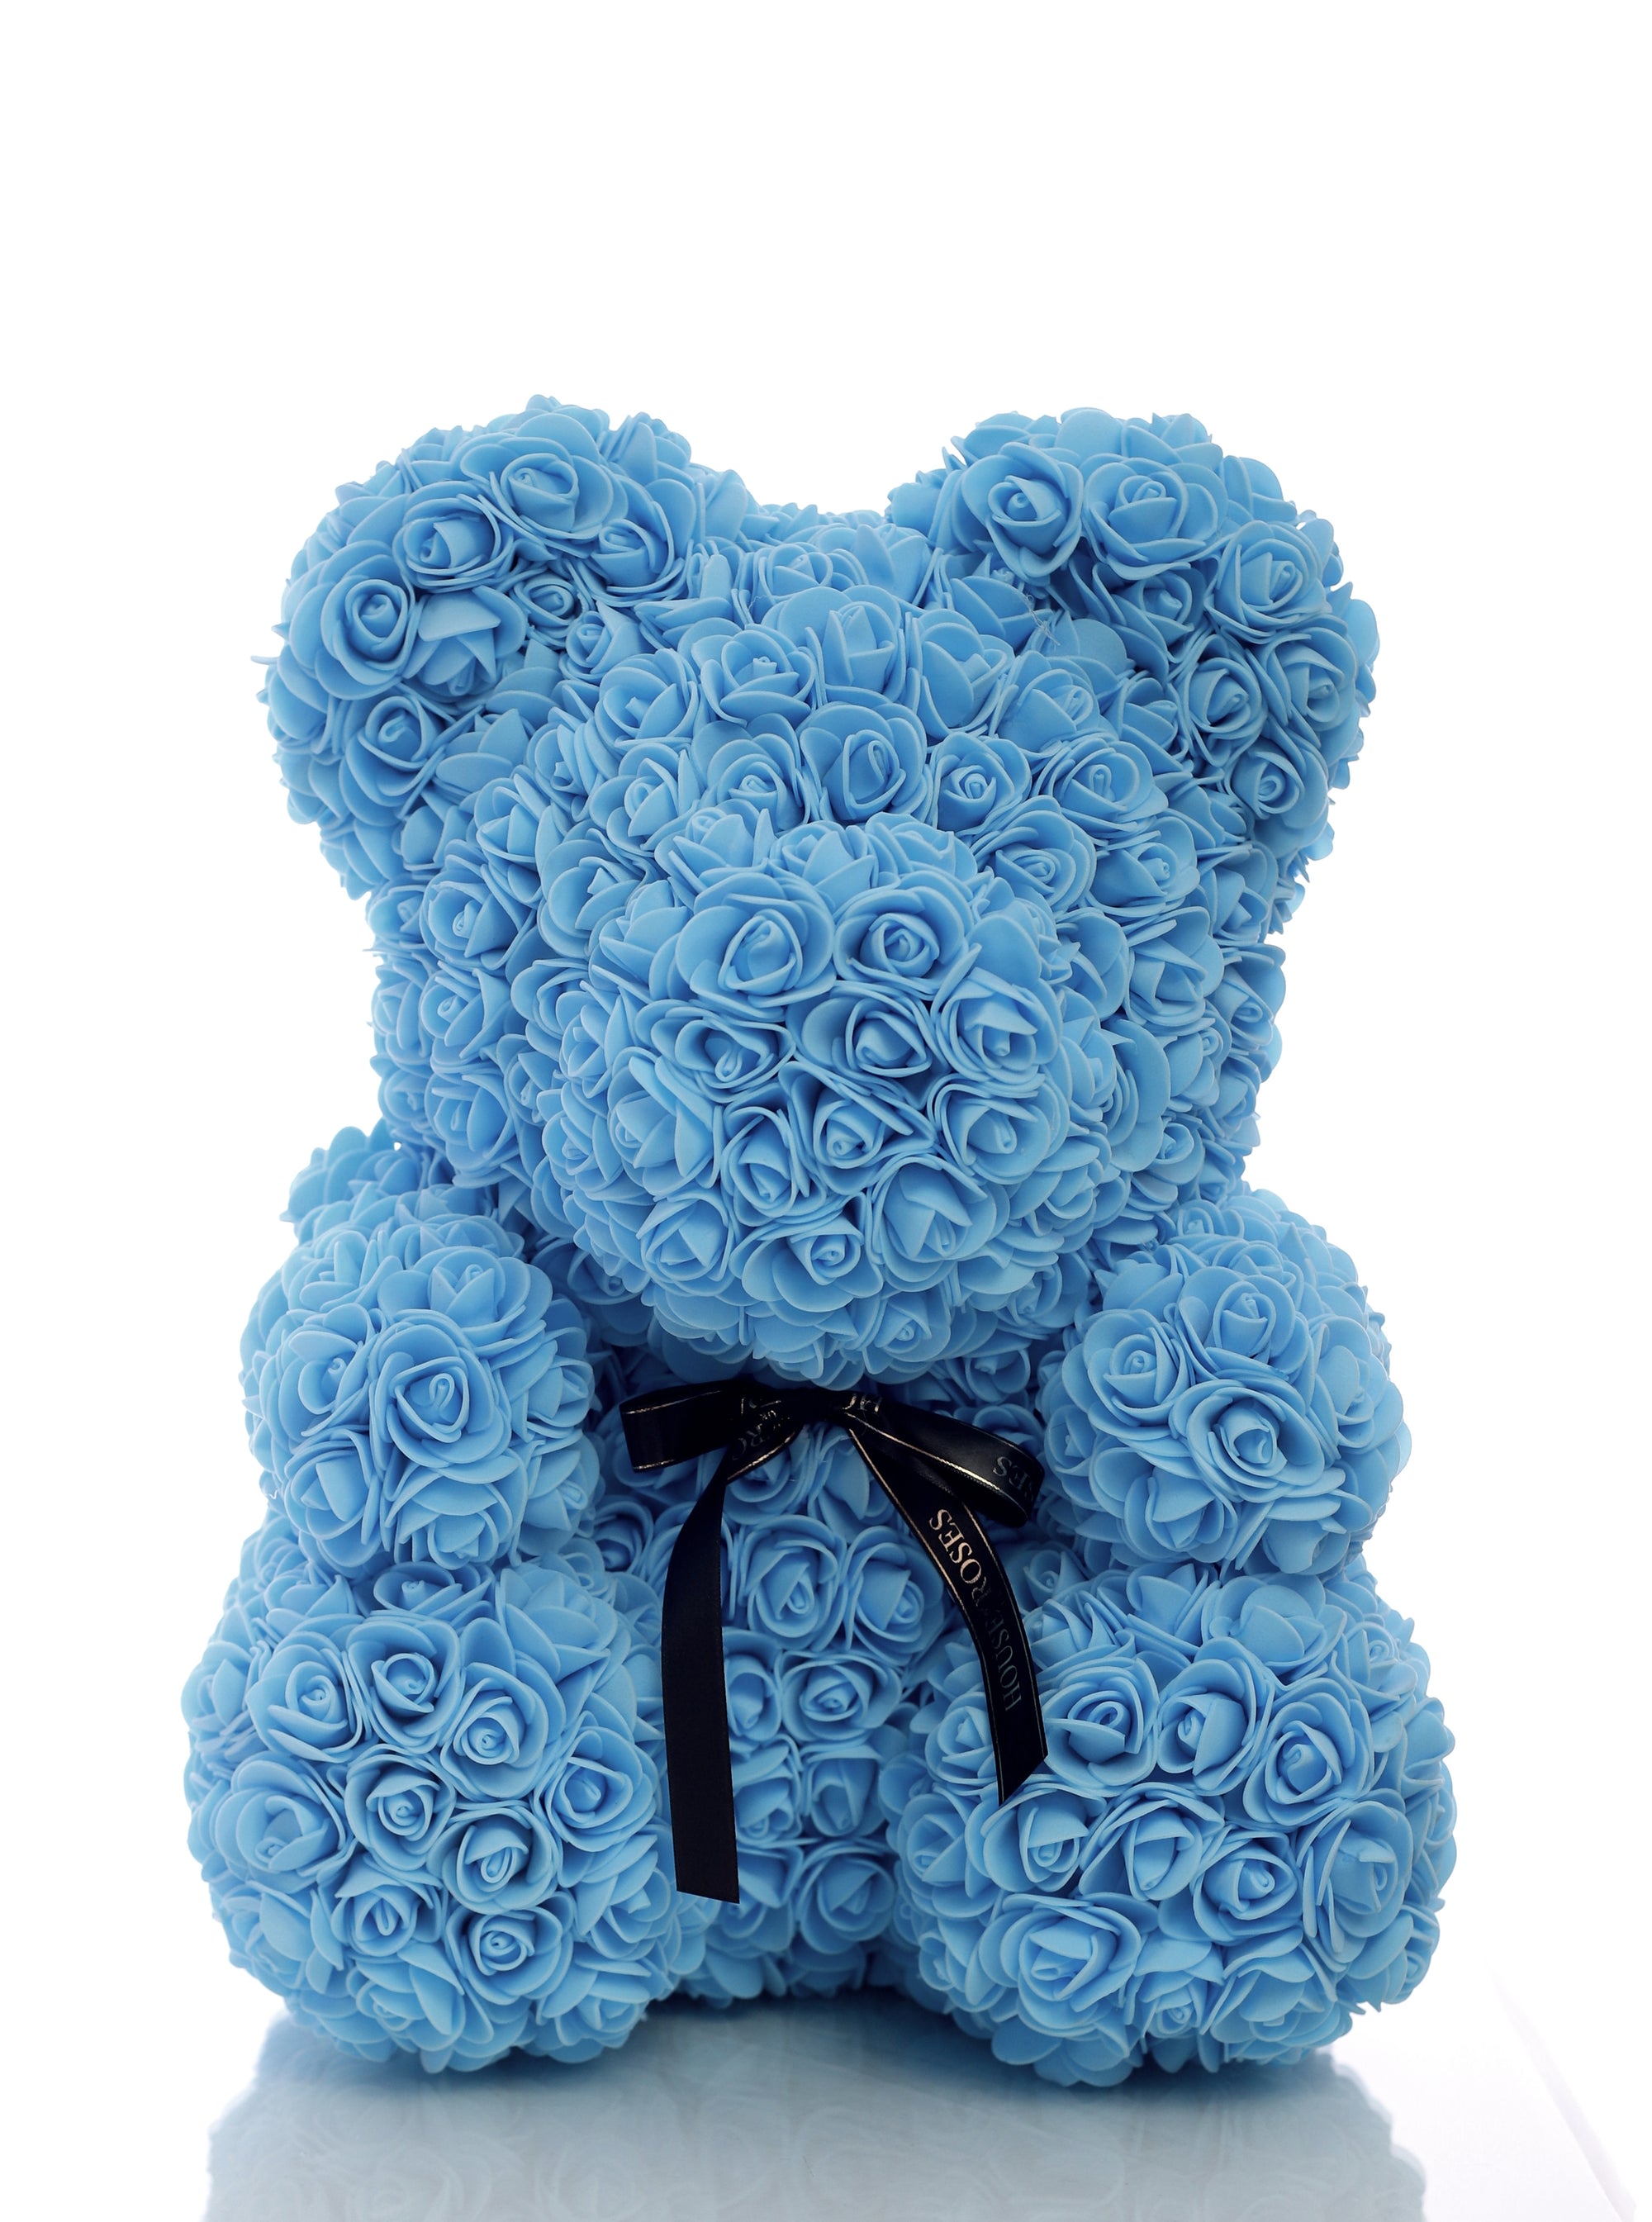 teddy bear with blue roses